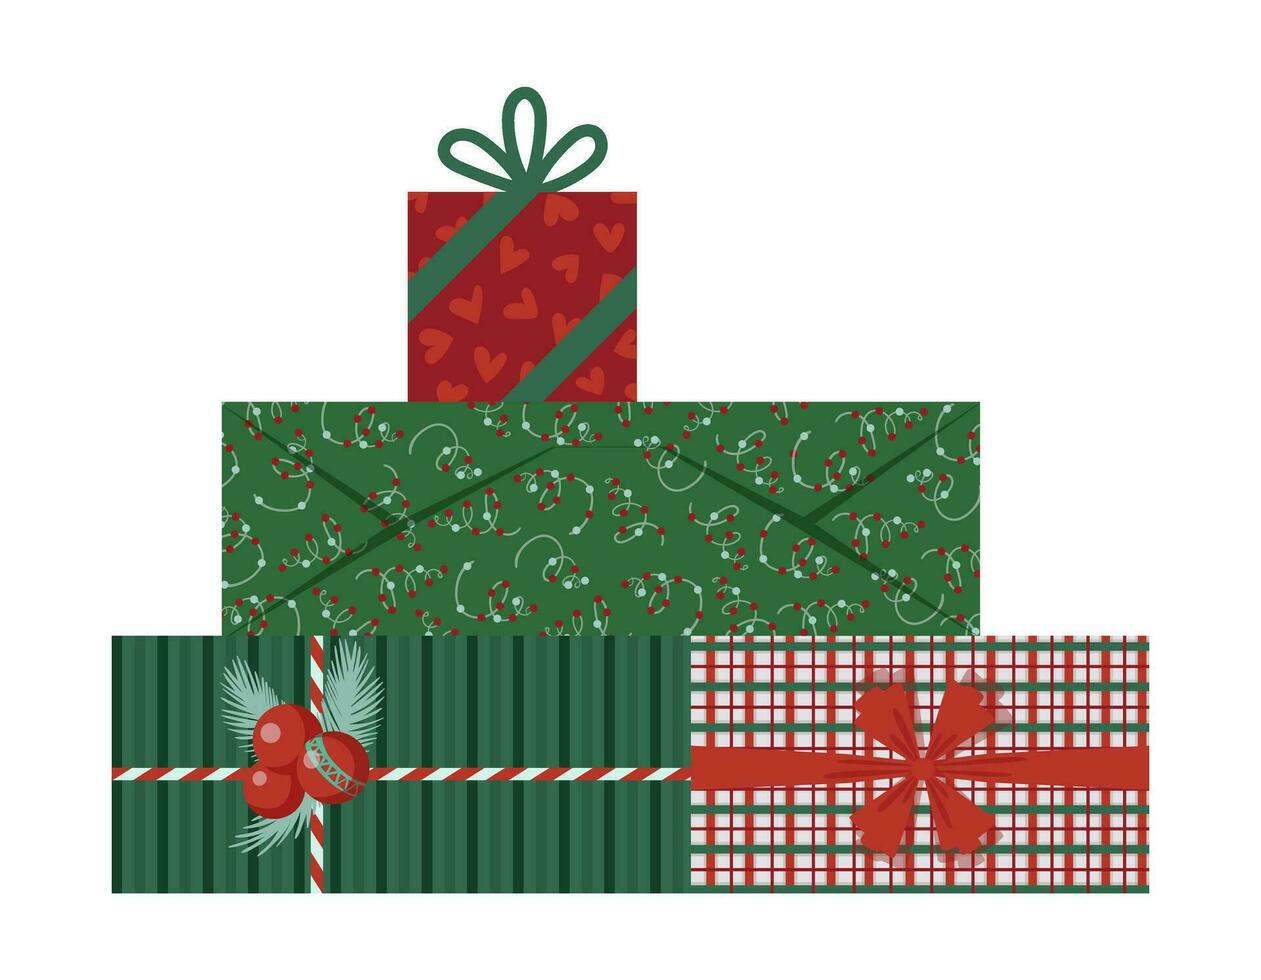 insvept jul gåva lådor. ny år närvarande lådor med band, pilbågar, grön och röd omslag papper. för hälsning kort, banderoller, webb illustrationer, ikoner, eller logotyper. vektor illustration eps 10